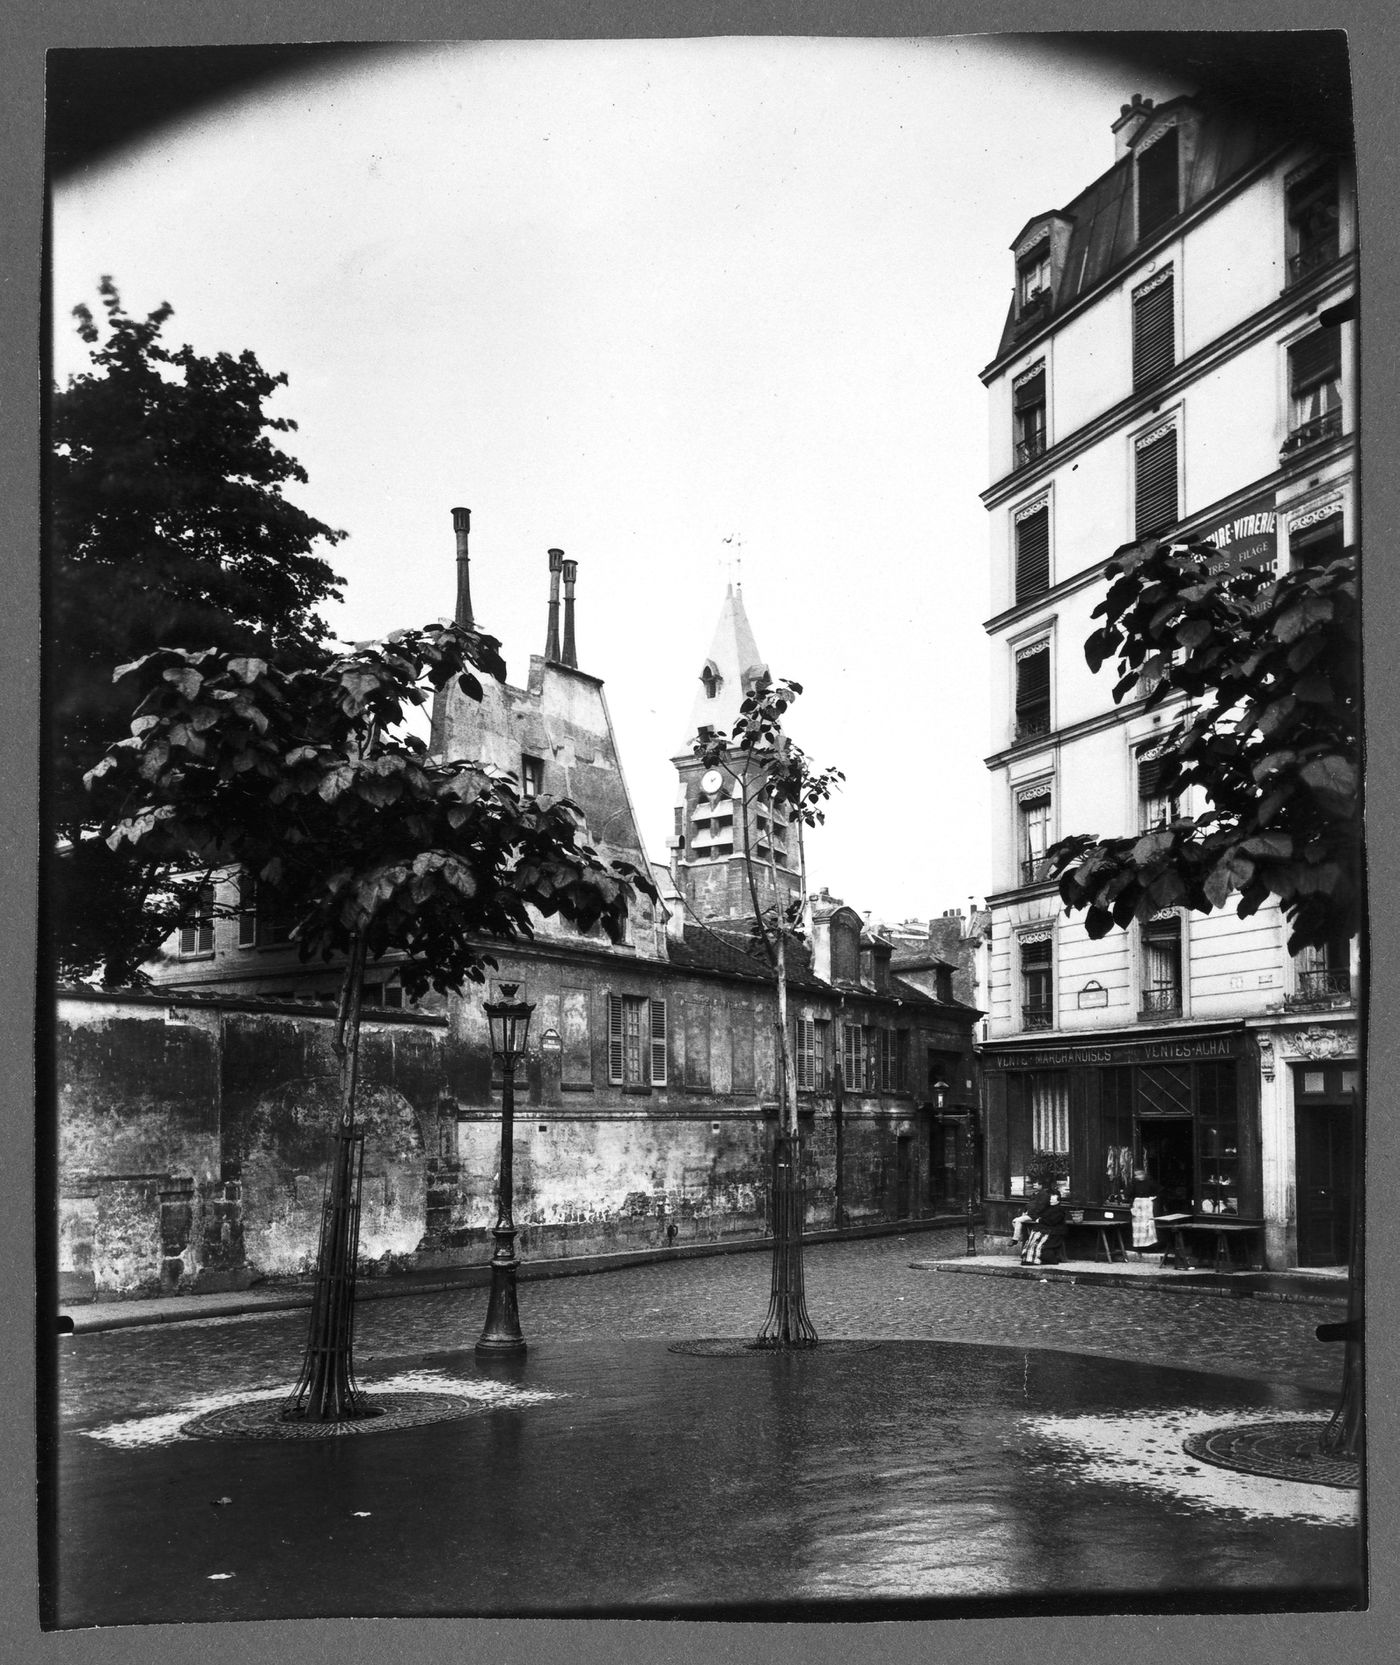 Place Saint Médard from the southeast, showing the Église de Saint Médard, Paris, France